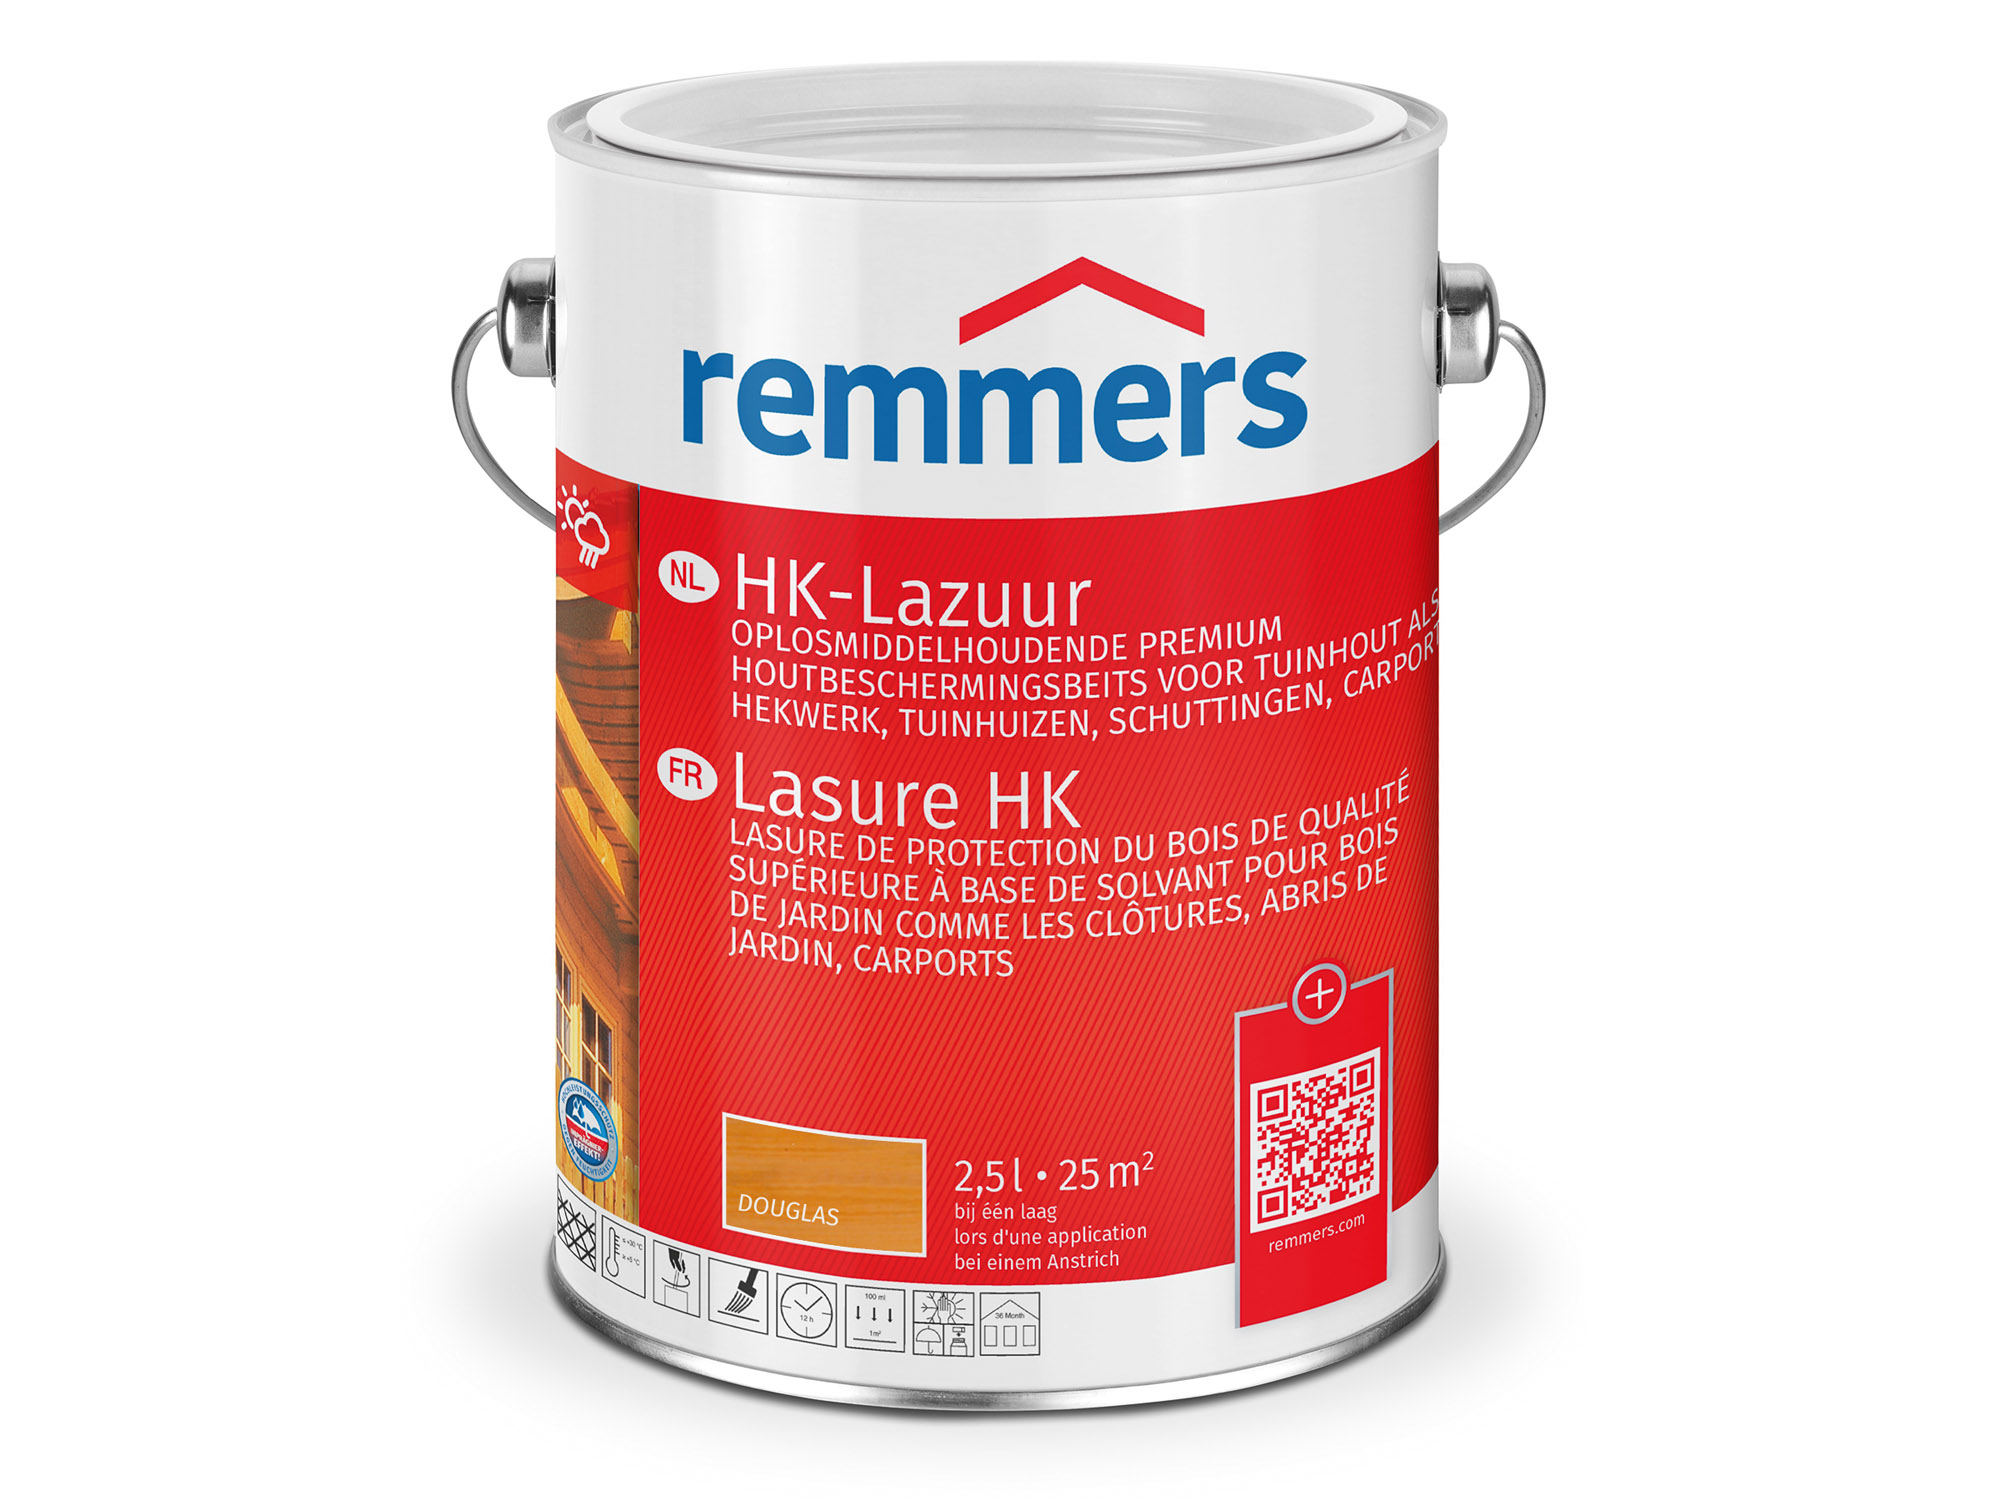 Remmers HK-Lazuur douglas